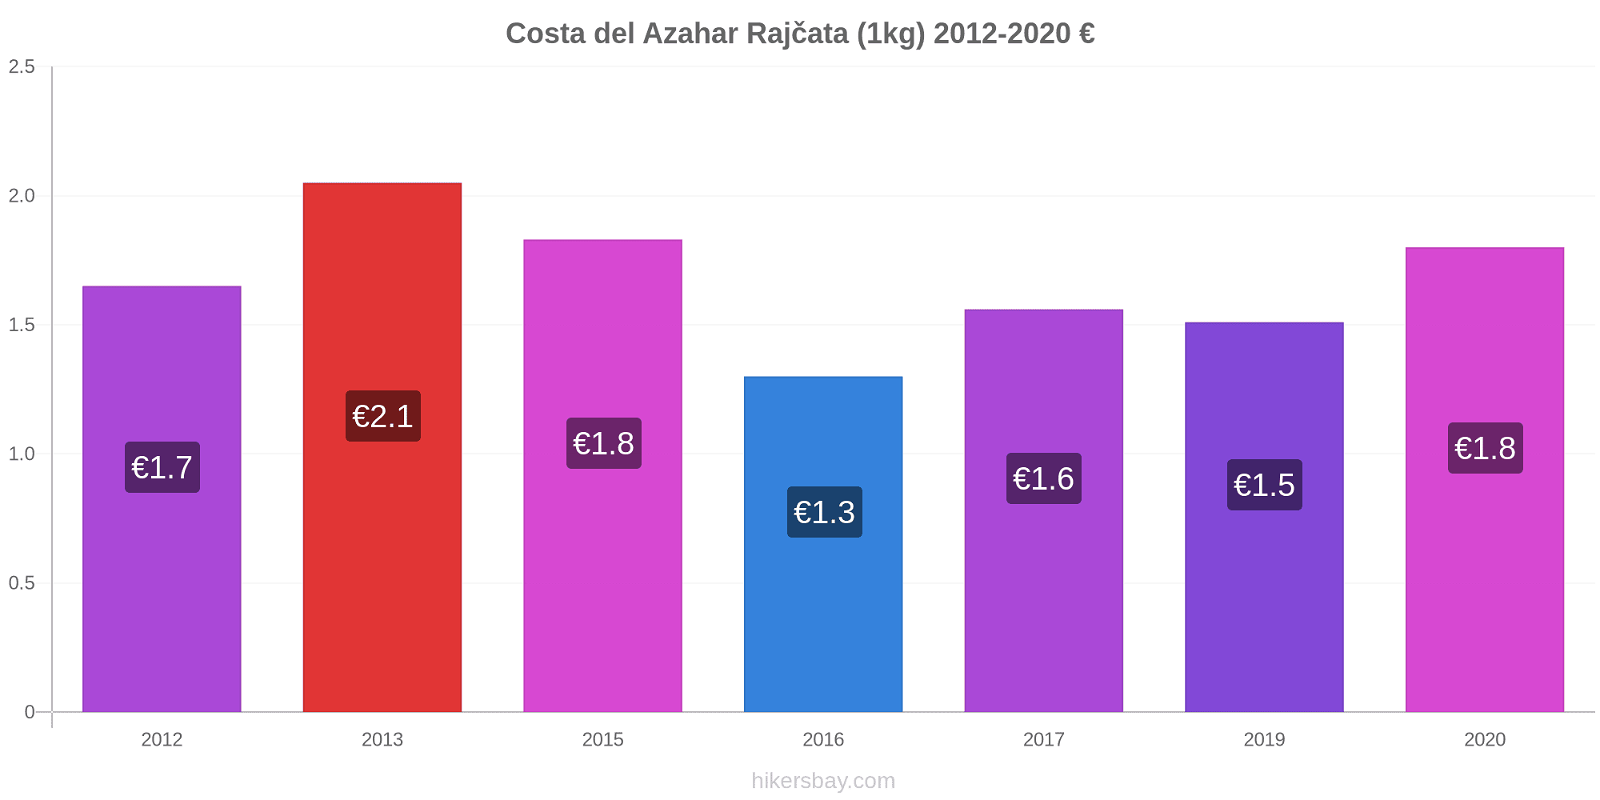 Costa del Azahar změny cen Rajčata (1kg) hikersbay.com